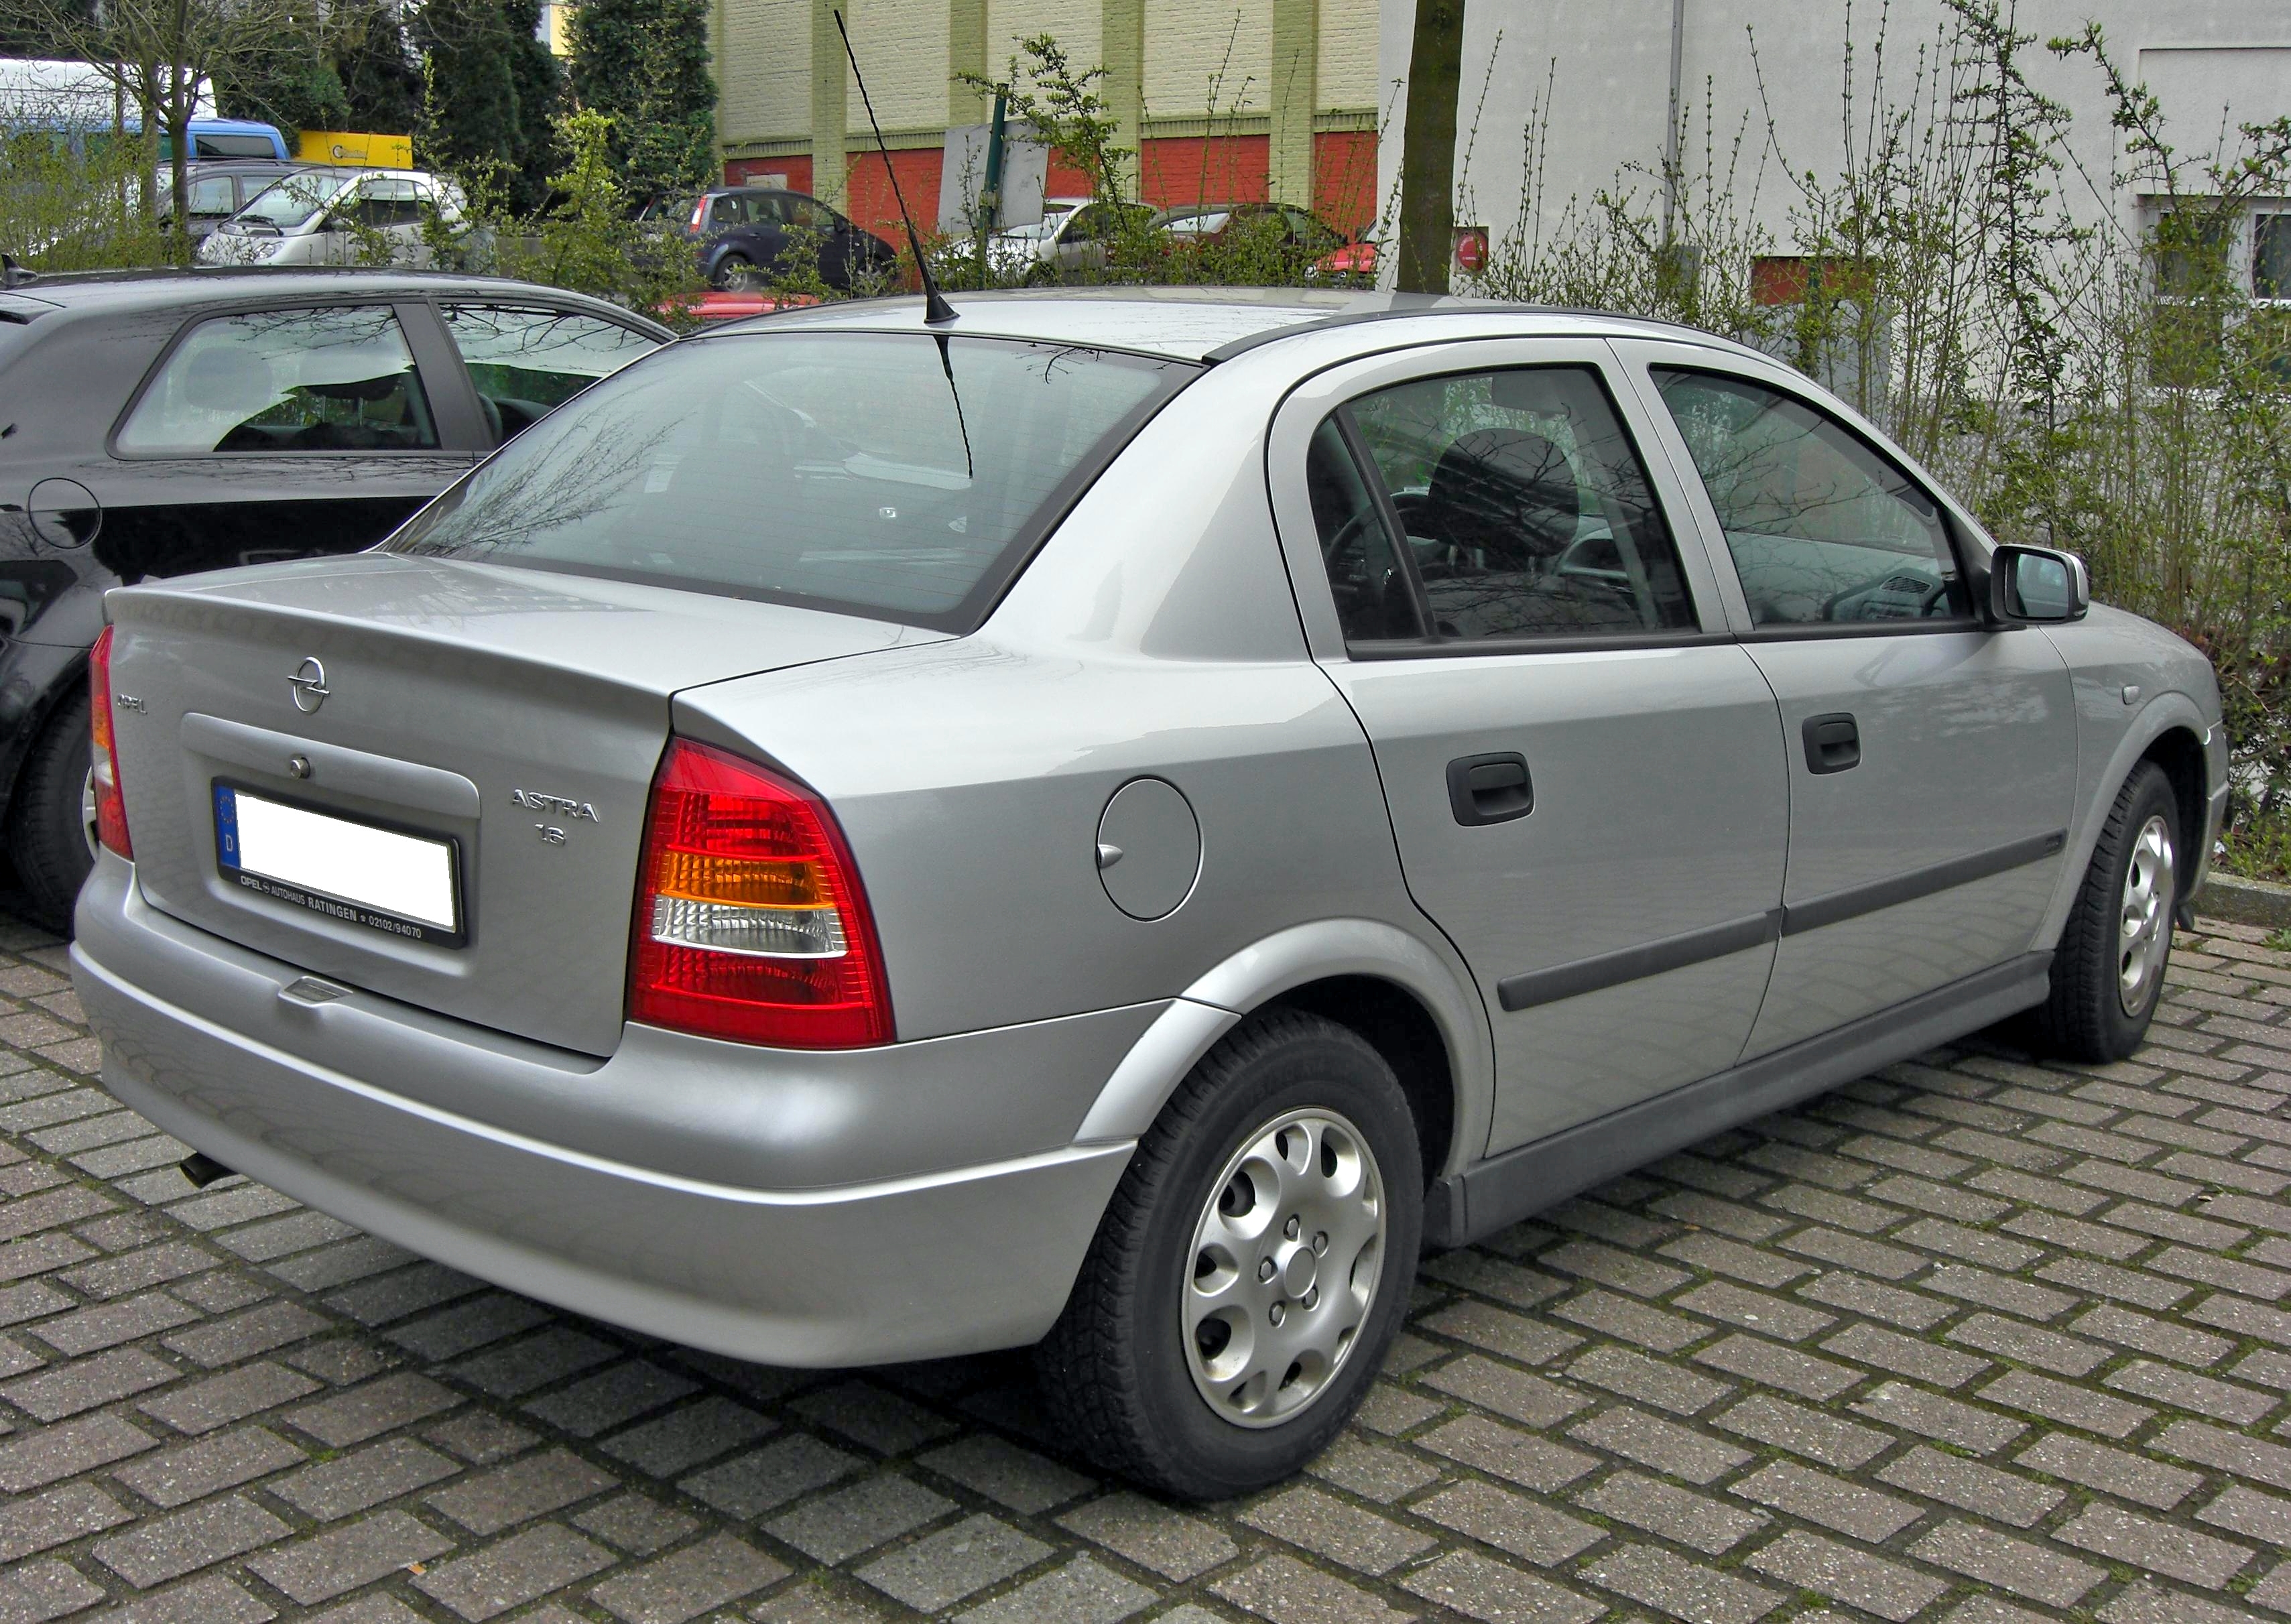 Archivo:Opel Astra G Classic.jpg - Wikipedia, la enciclopedia libre